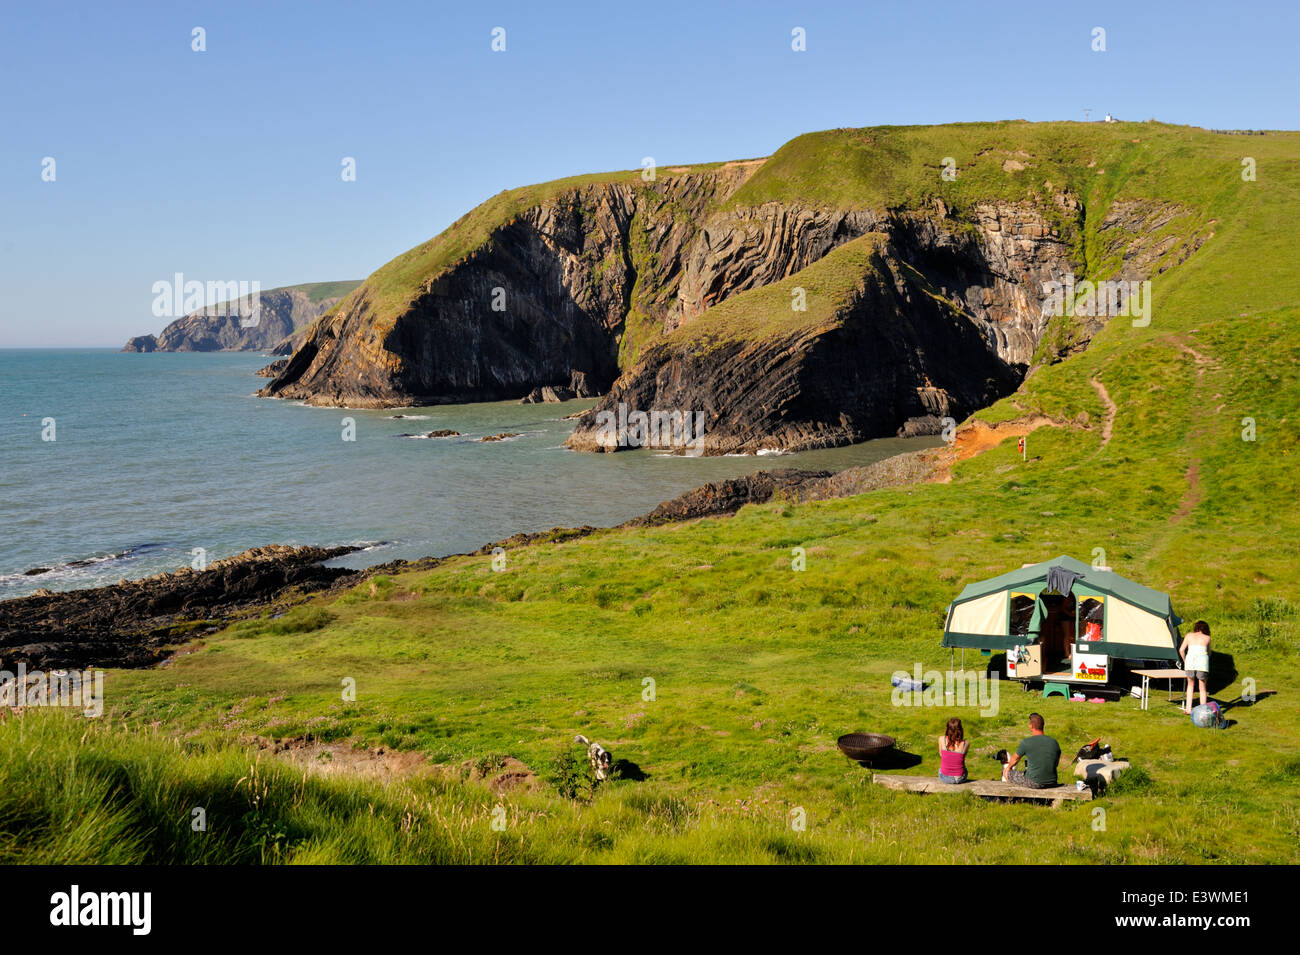 Camping le long de la côte du Pembrokeshire, Pays de Galles de l'ouest. Près de la Baie d'Ceibwr (Ynys Fach) Banque D'Images